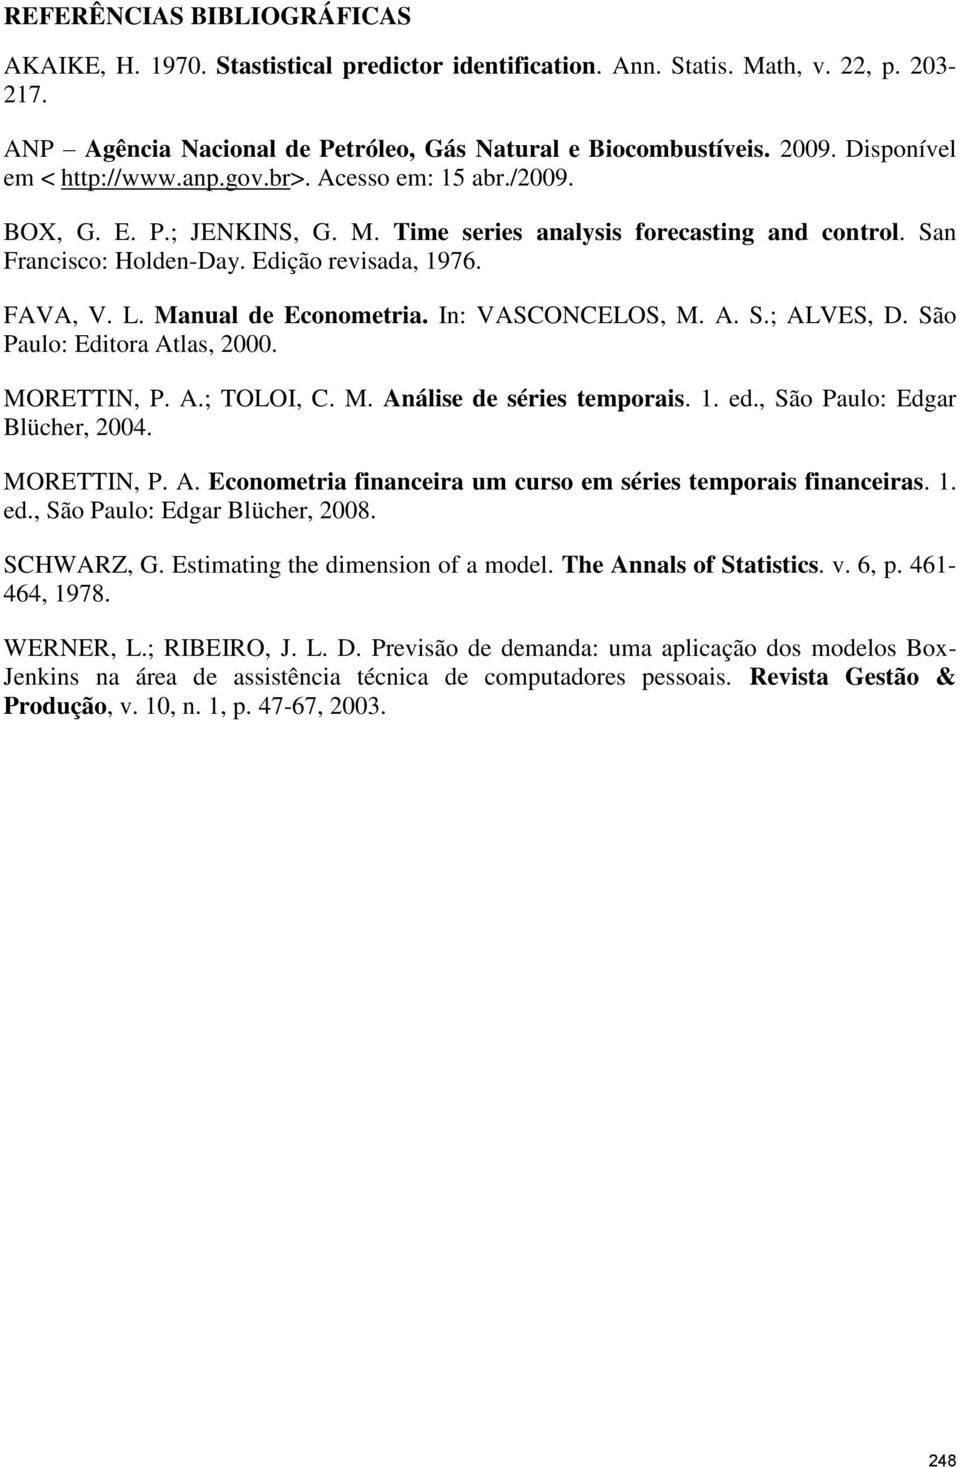 L. Manual de Econometria. In: VASCONCELOS, M. A. S.; ALVES, D. São Paulo: Editora Atlas, 2000. MORETTIN, P. A.; TOLOI, C. M. Análise de séries temporais. 1. ed., São Paulo: Edgar Blücher, 2004.